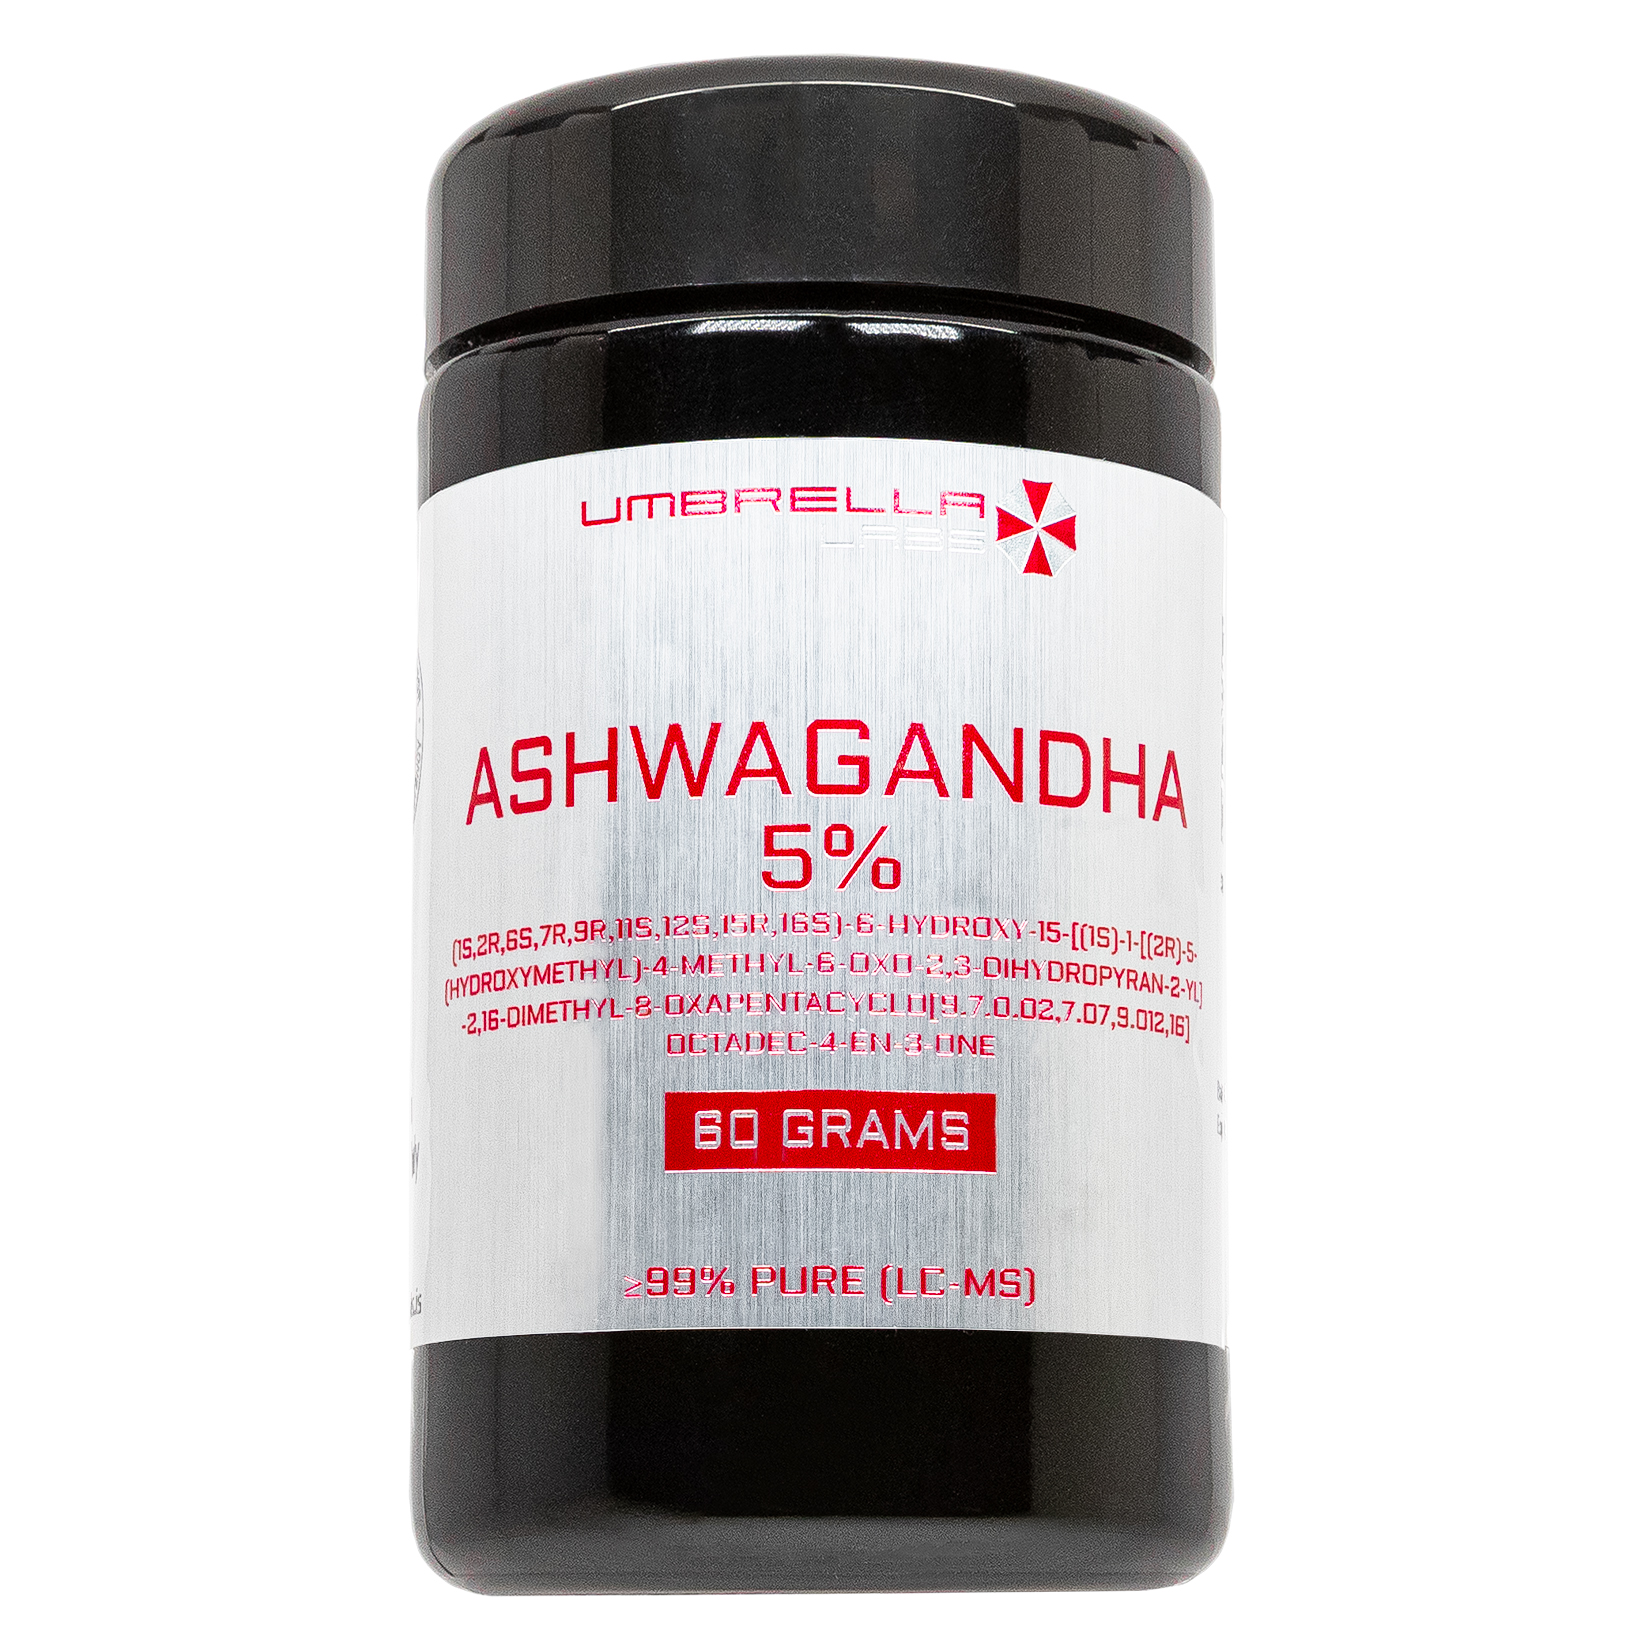 ashwagandha 5% powder